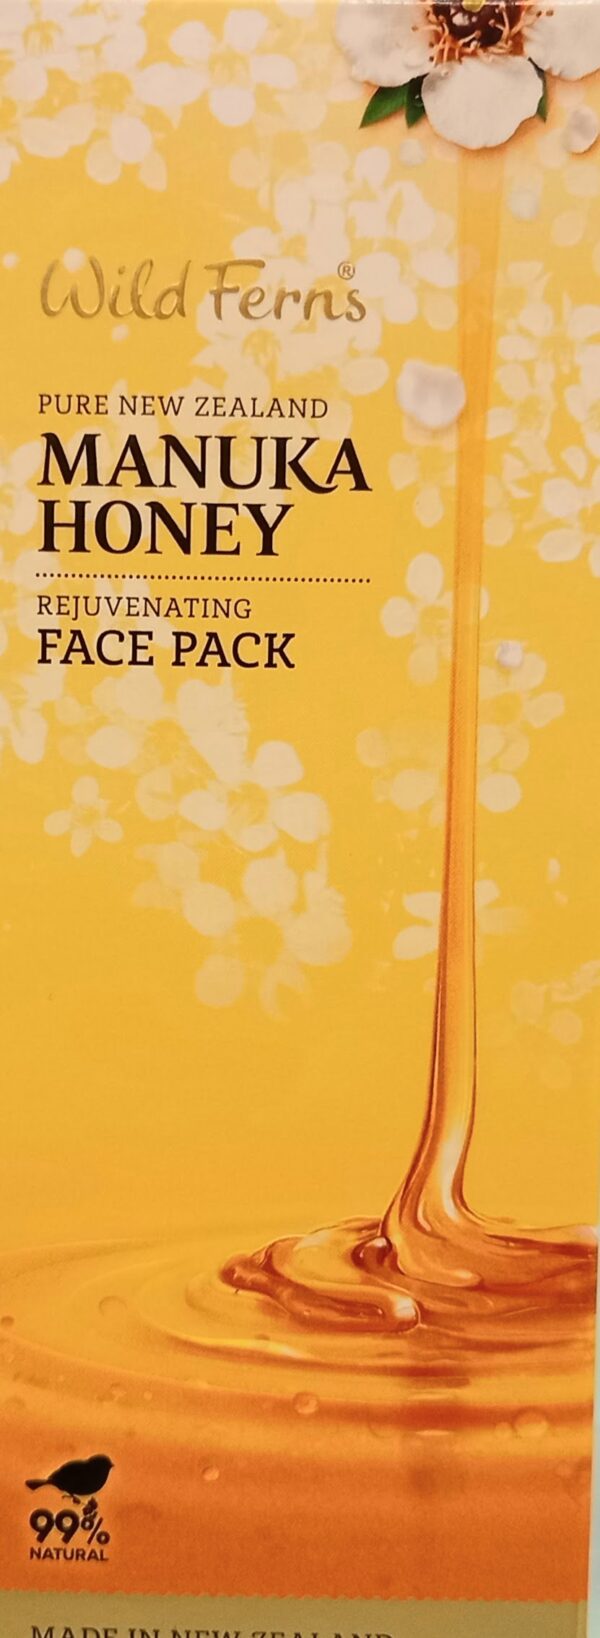 Manuka Honey - Face Pack